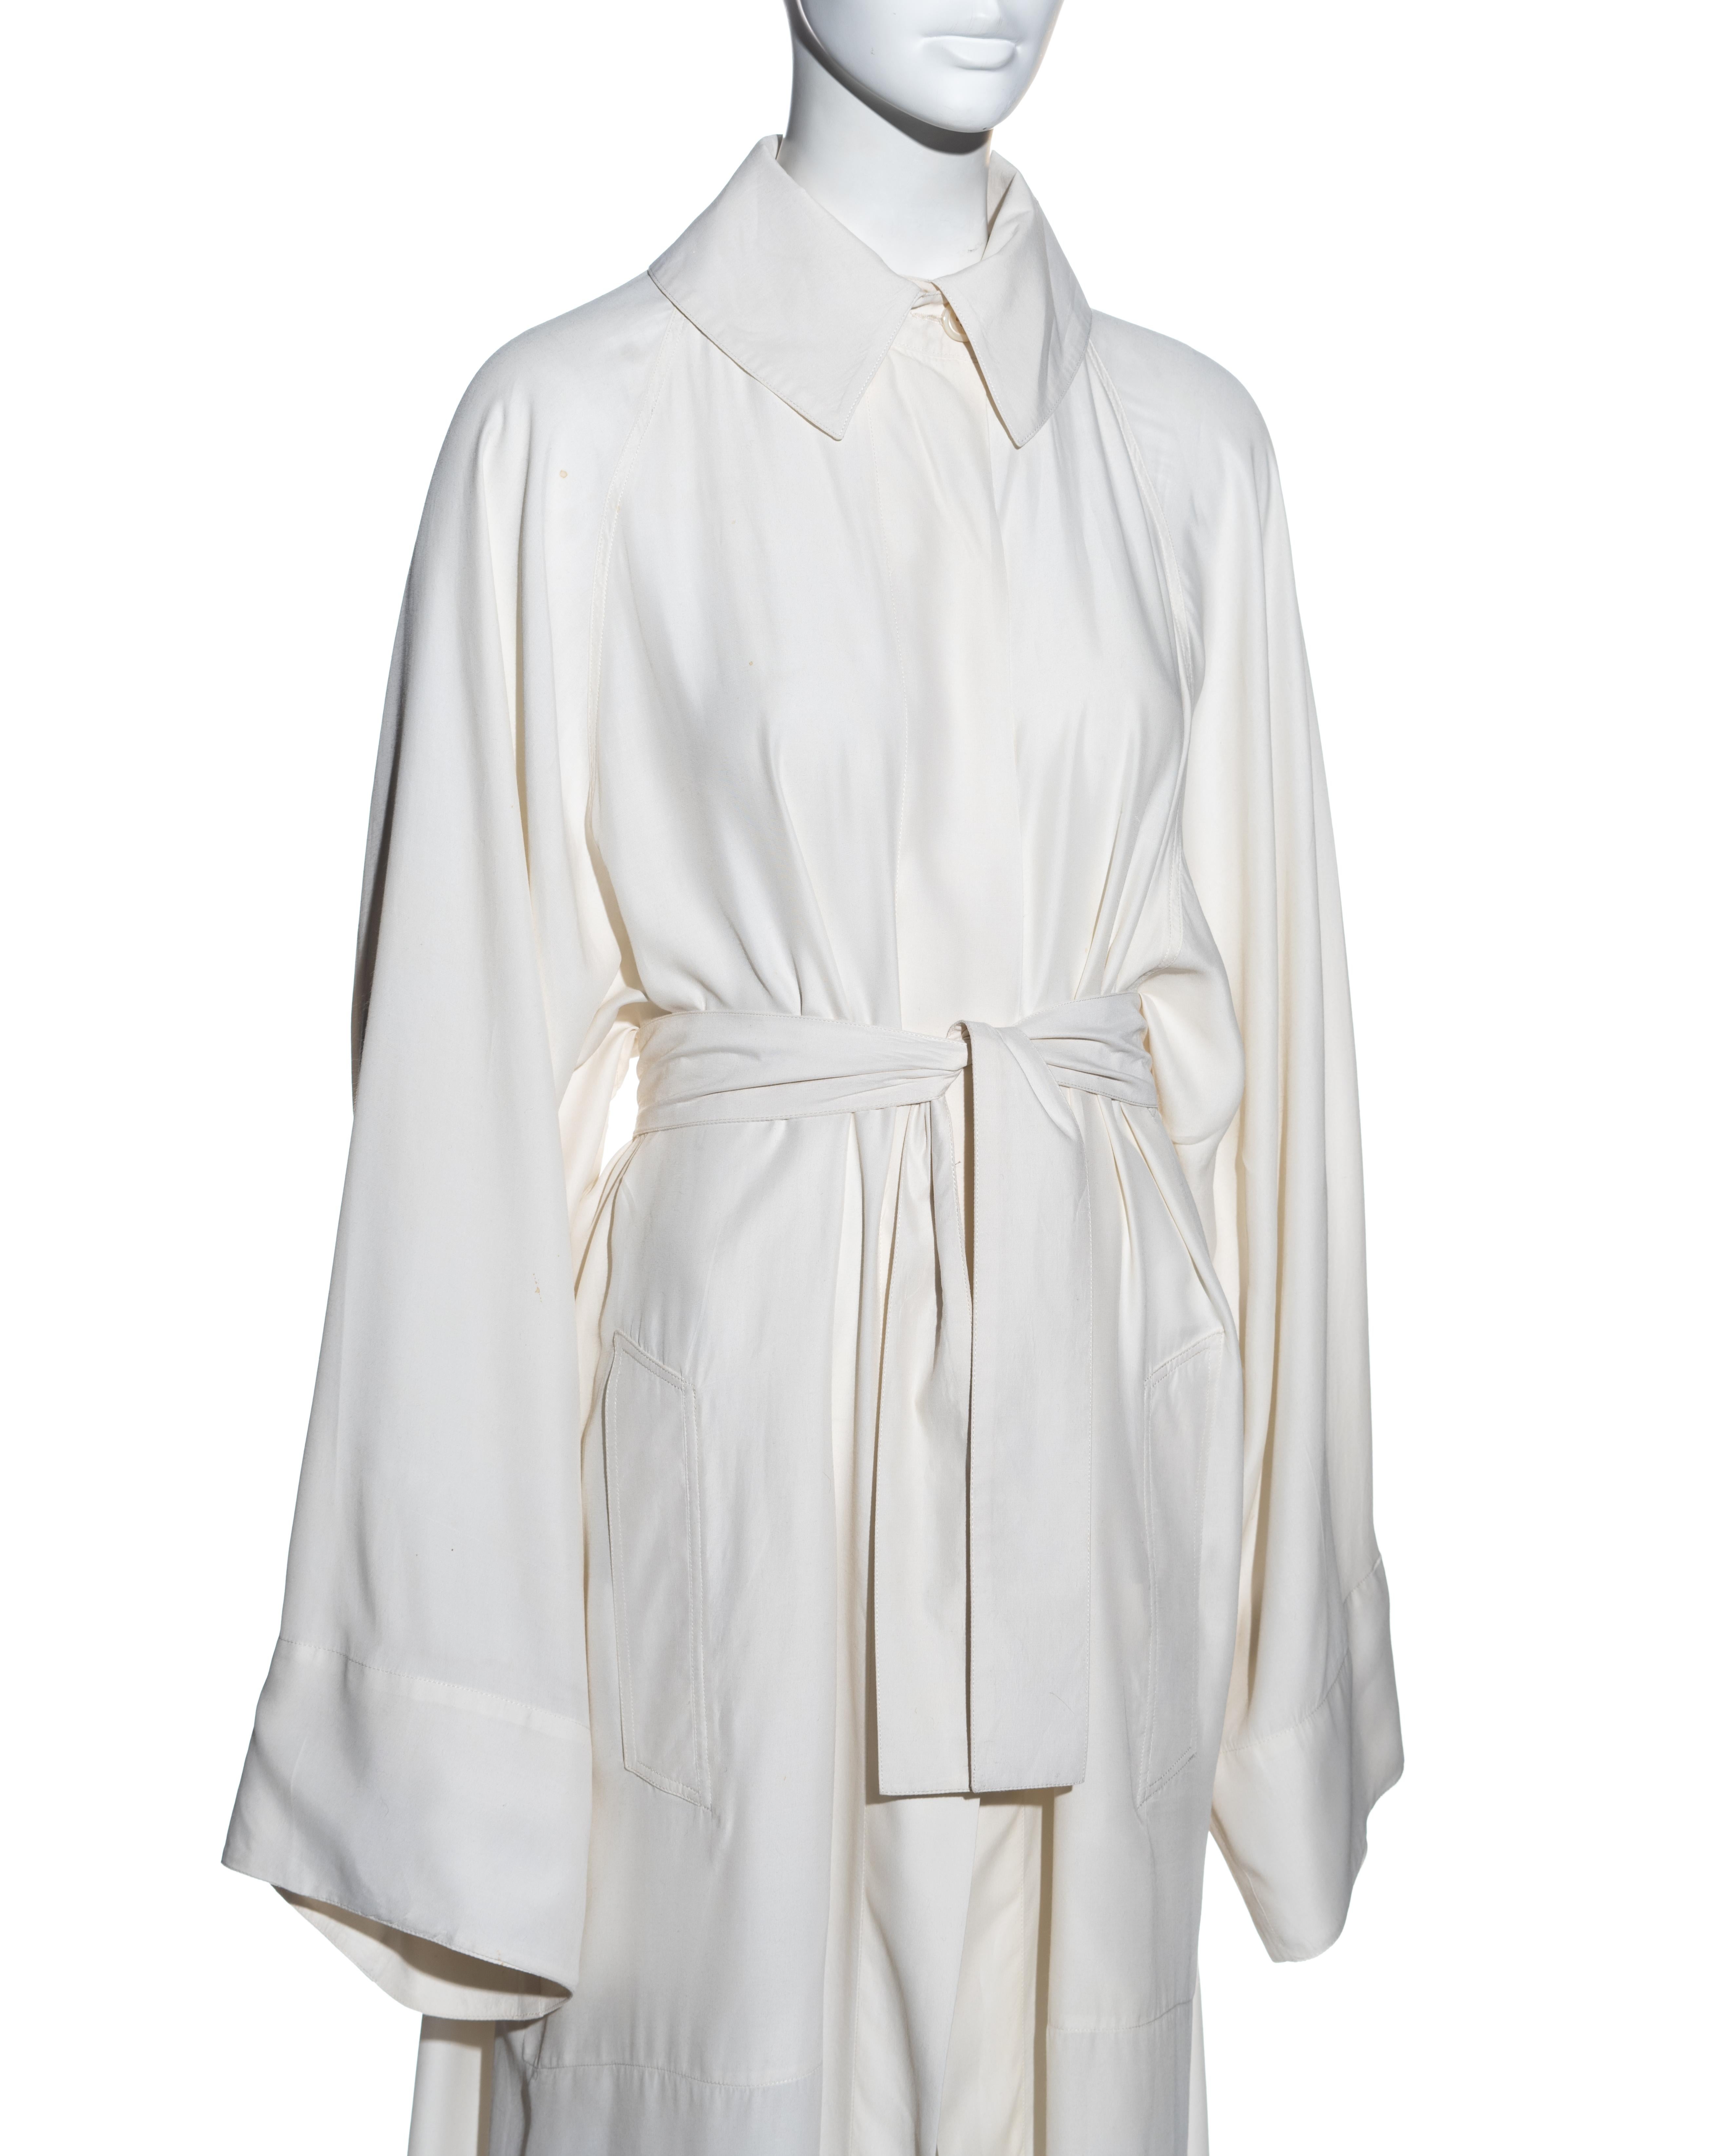 white monk robe